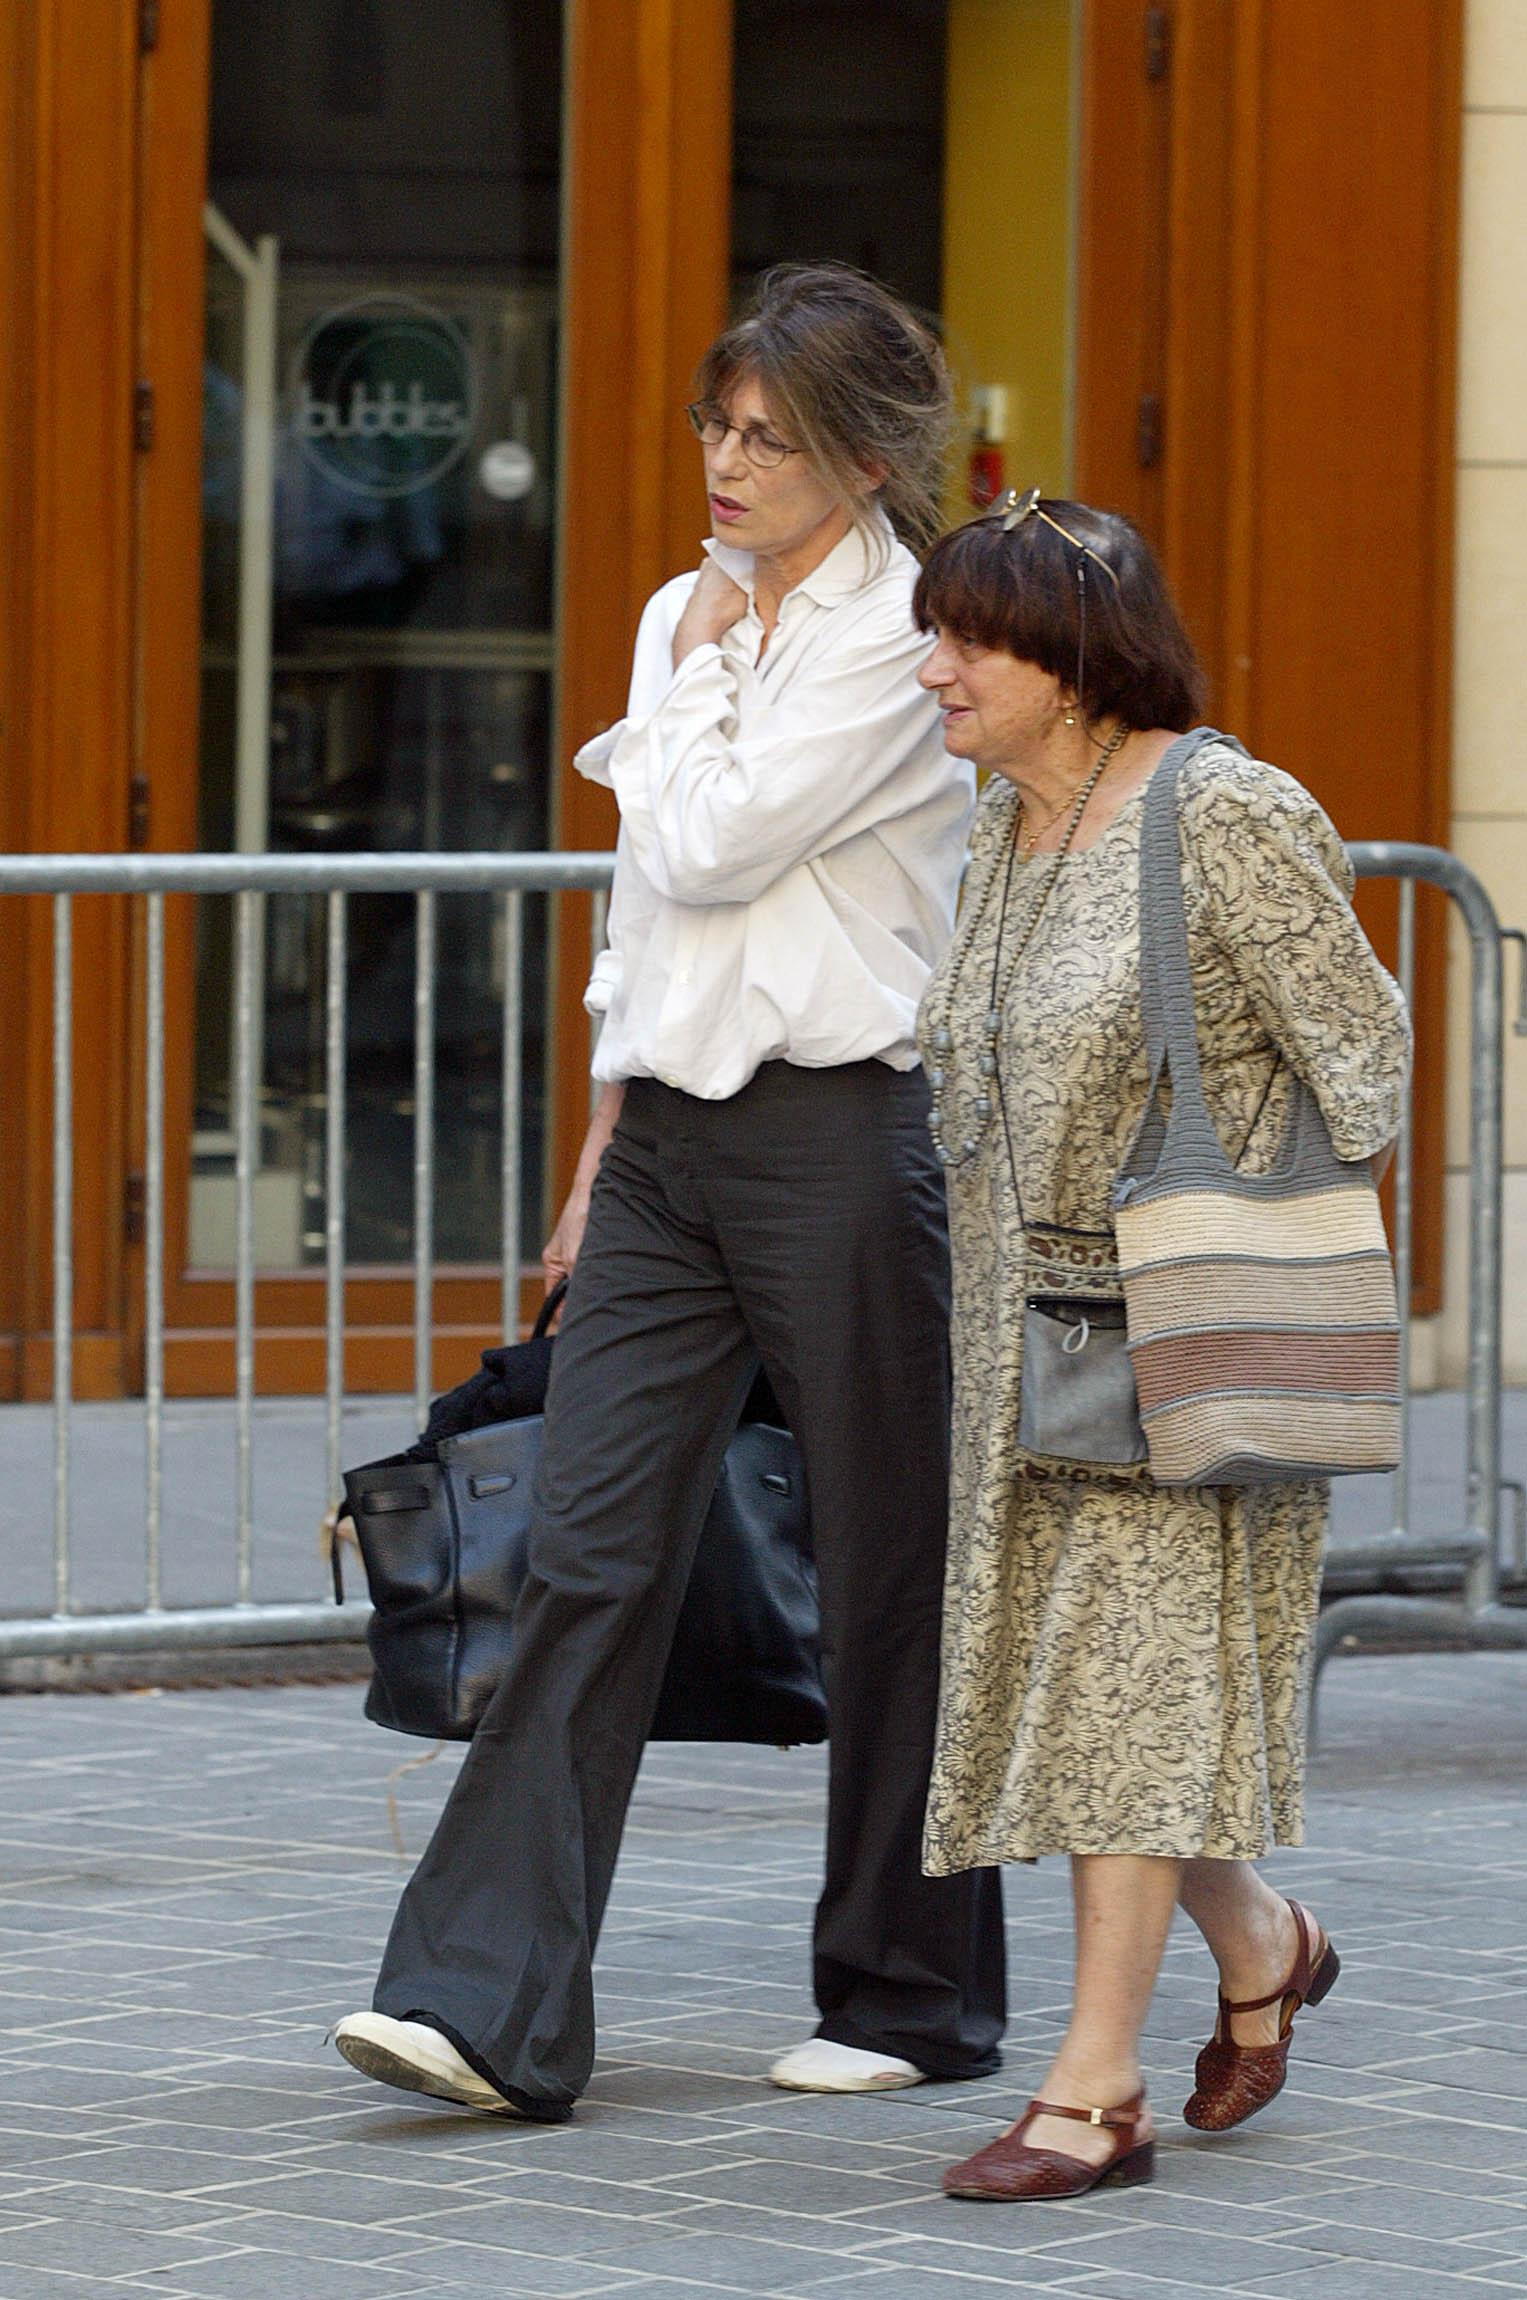 l'actrice et chanteuse Jane Birkin (G) et la réalisatrice Agnès Varda quittent le théâtre Edouard VII, le 06 août 2003 à Paris, où a été rendu un hommage à l'actrice française Marie Trintignant, décédée le 01 août dernier.   AFP PHOTO MARTIN BUREAU (Photo by Martin BUREAU / AFP)